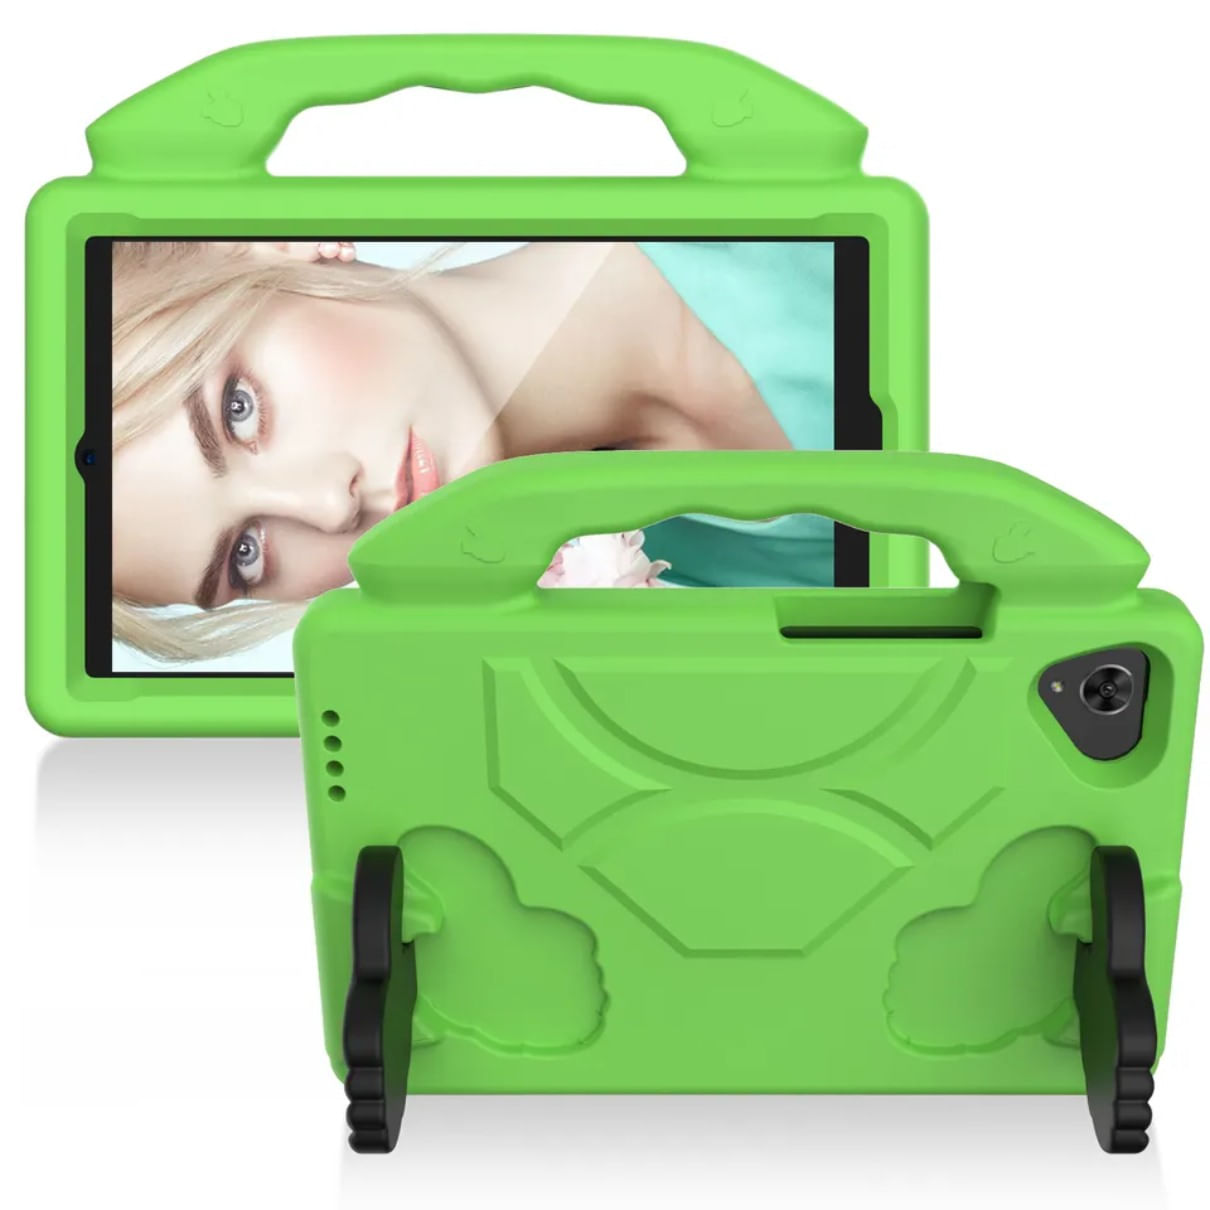 Funda de Goma con Diseño Like para Tablet Lenovo M7 Verde